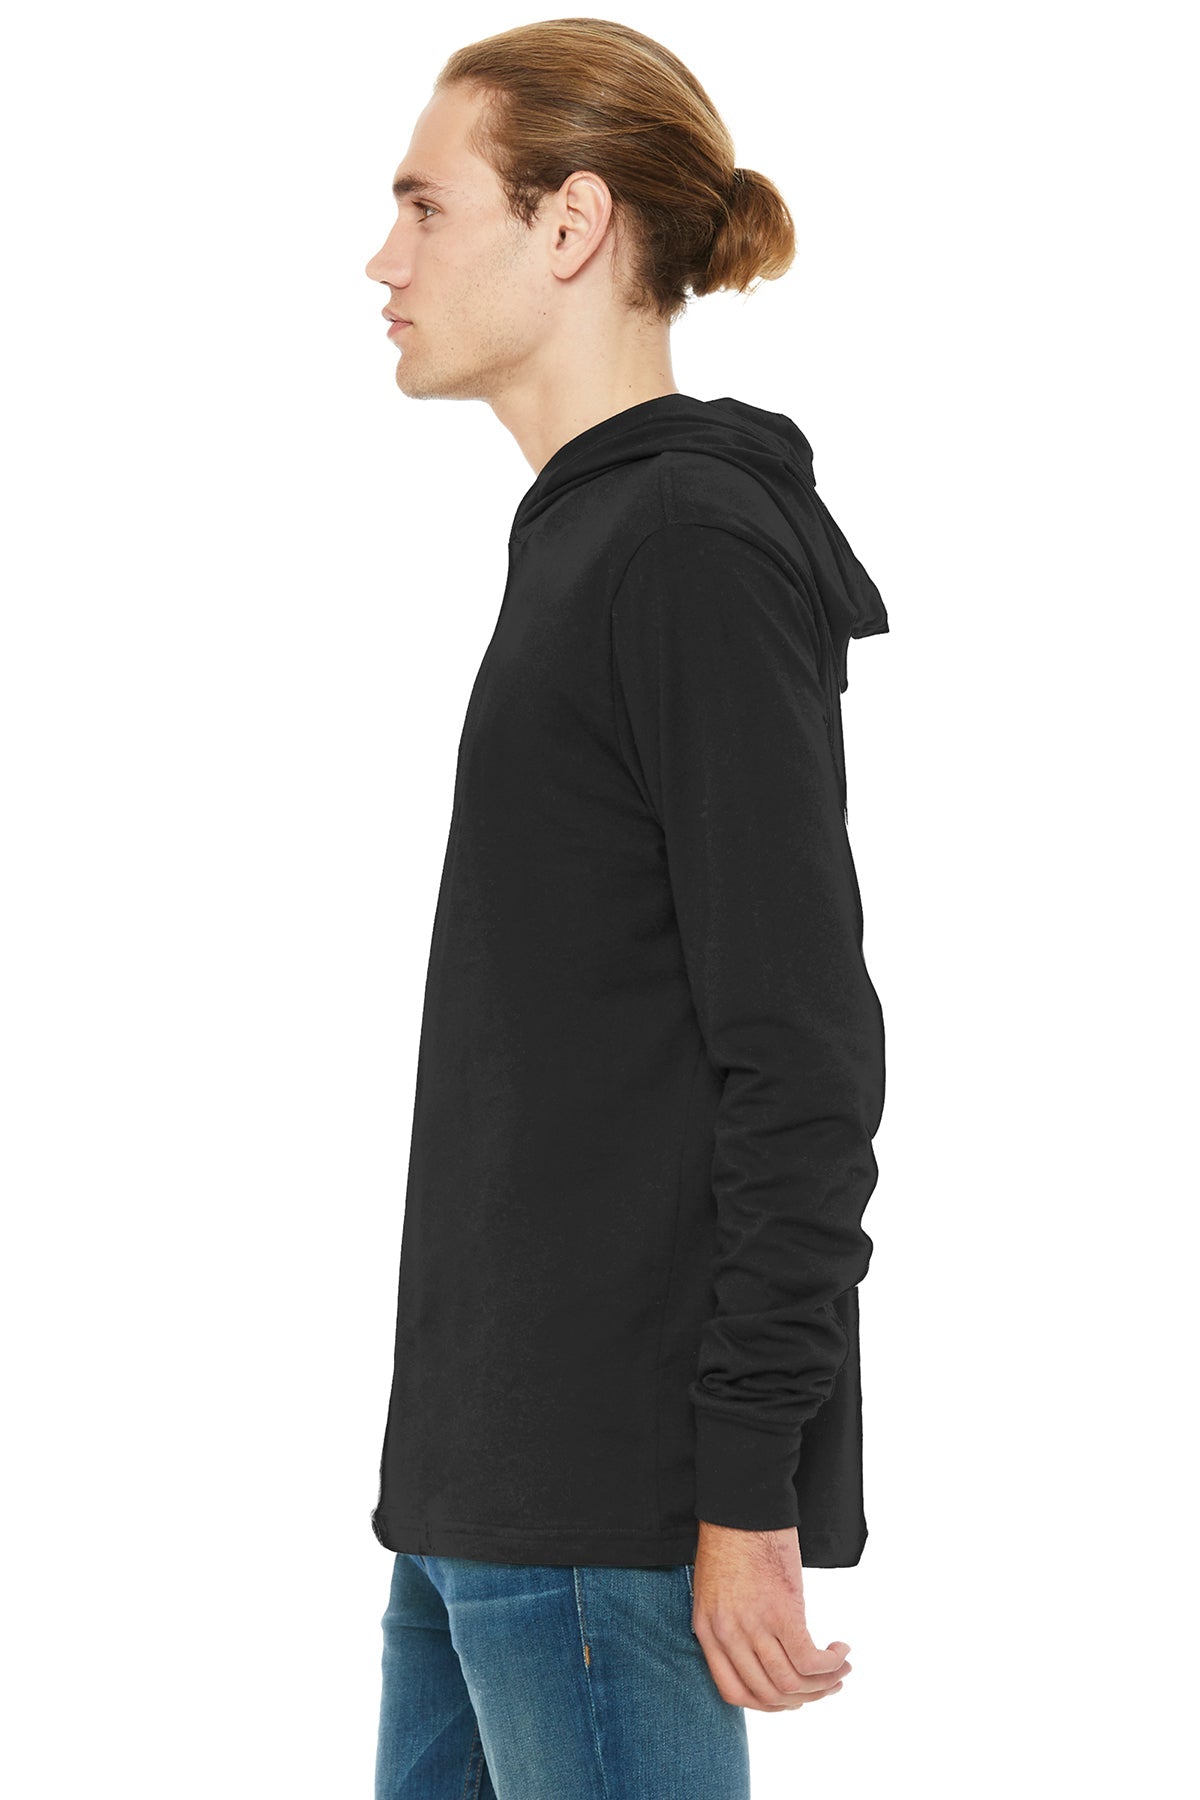 bella + canvas unisex jersey long sleeve hoodie 3512 black